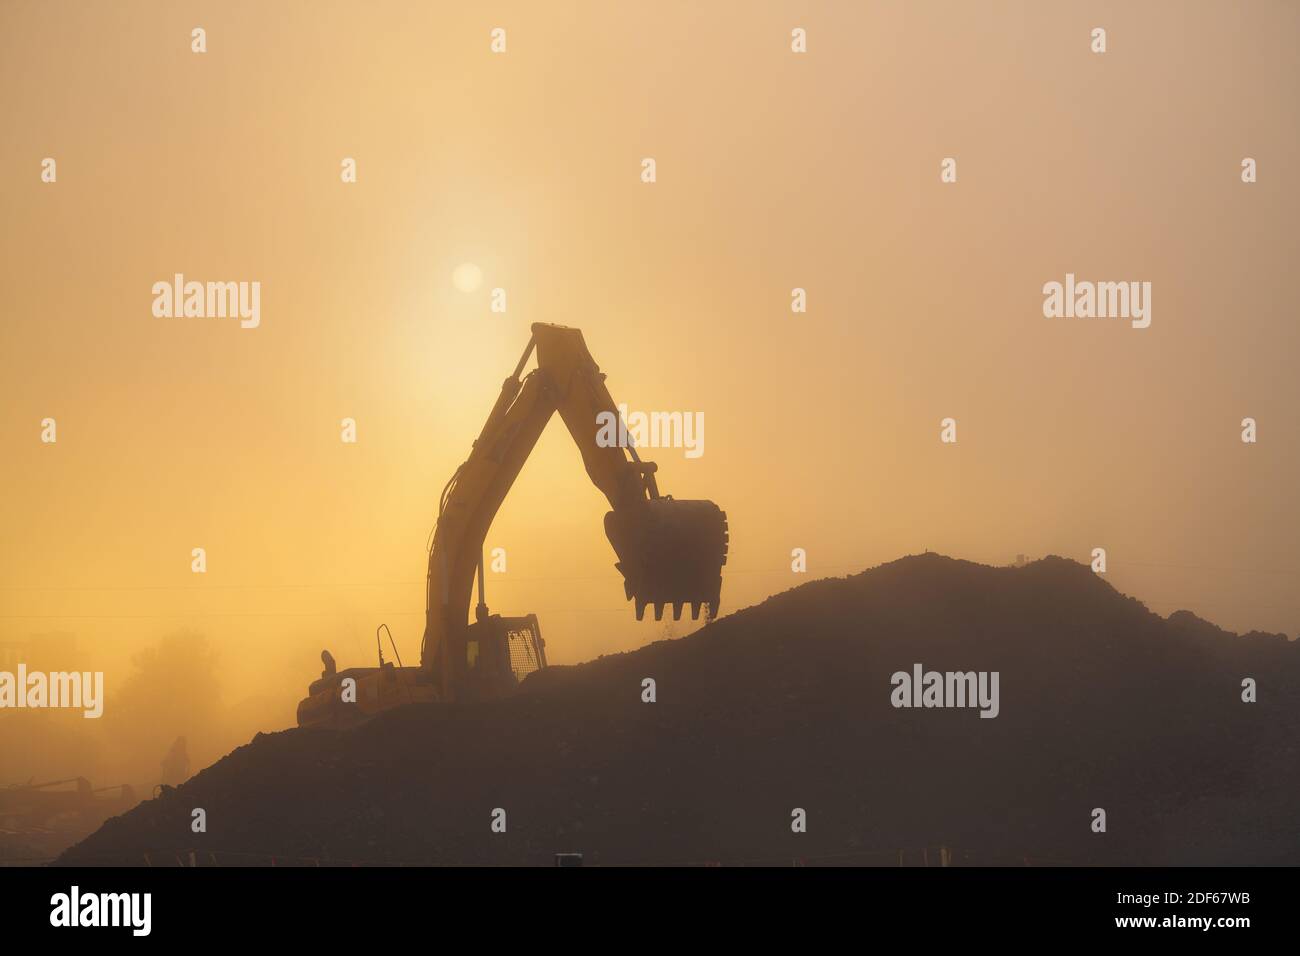 Ein Bagger führt Arbeiten in Schutt in dunstigen und staubigen frühmorgens Bedingungen. Stockfoto